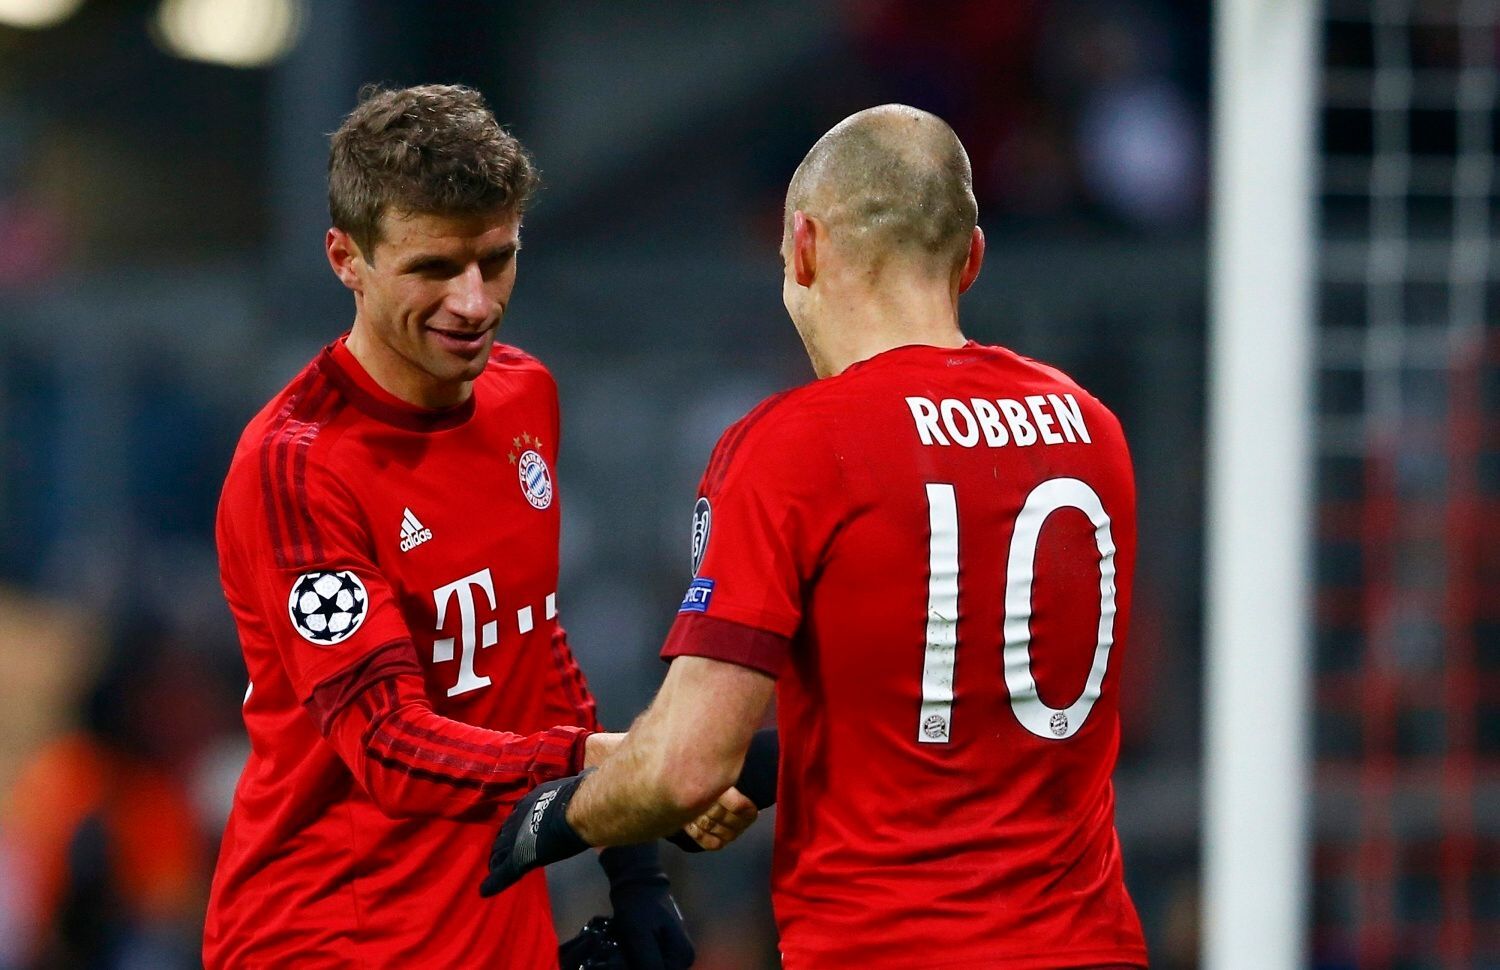 LM, Bayern-Olympiakos Pireus: Thomas Müller a Arjen Robben